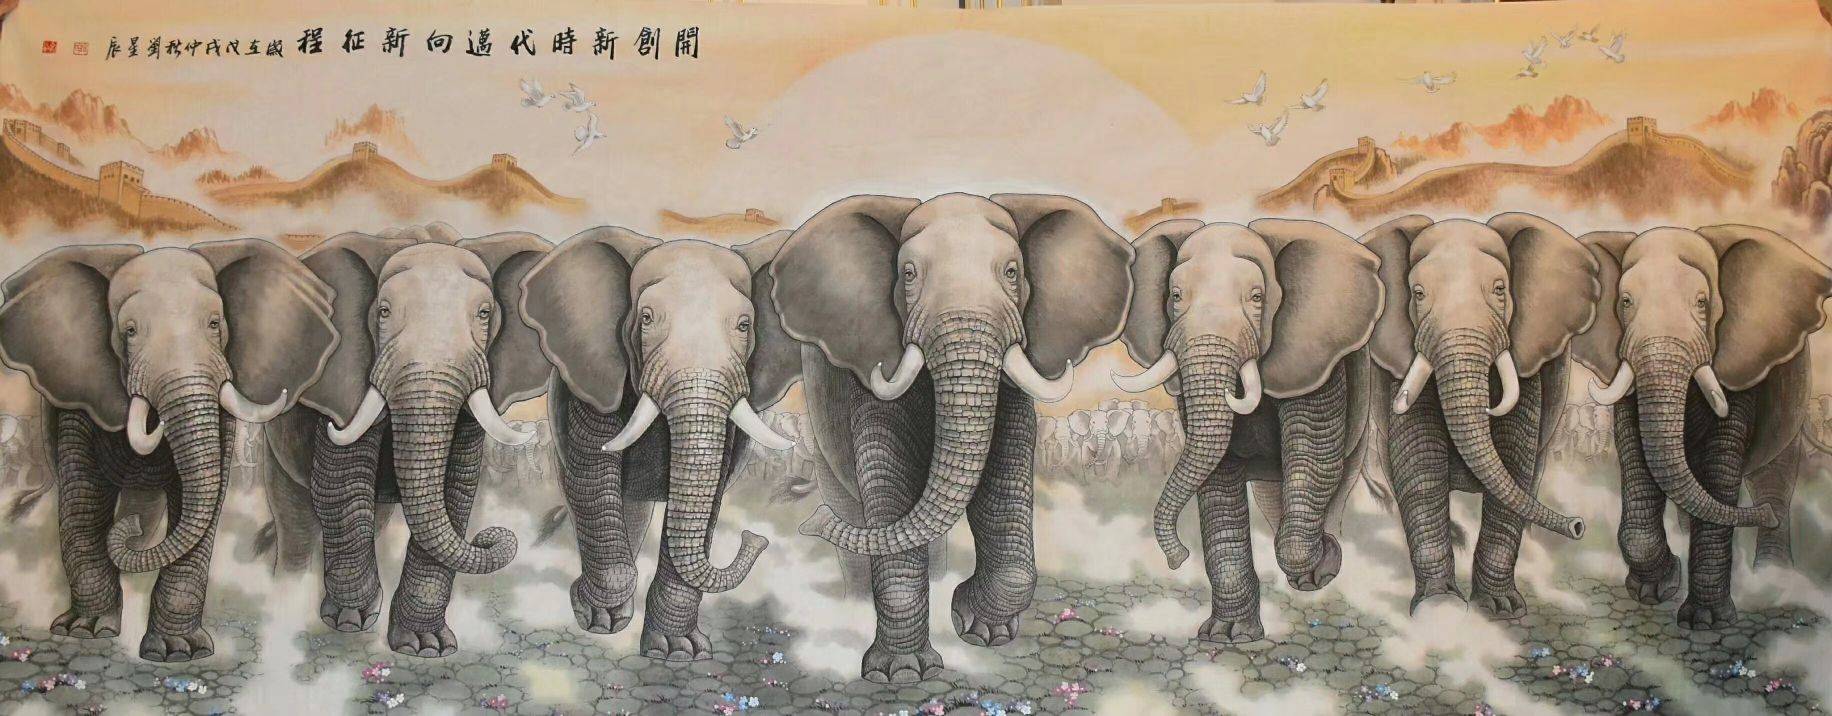 1,吉祥:大象因其诚实忠厚的形象成为全世界的吉祥物,而在中国传统文化